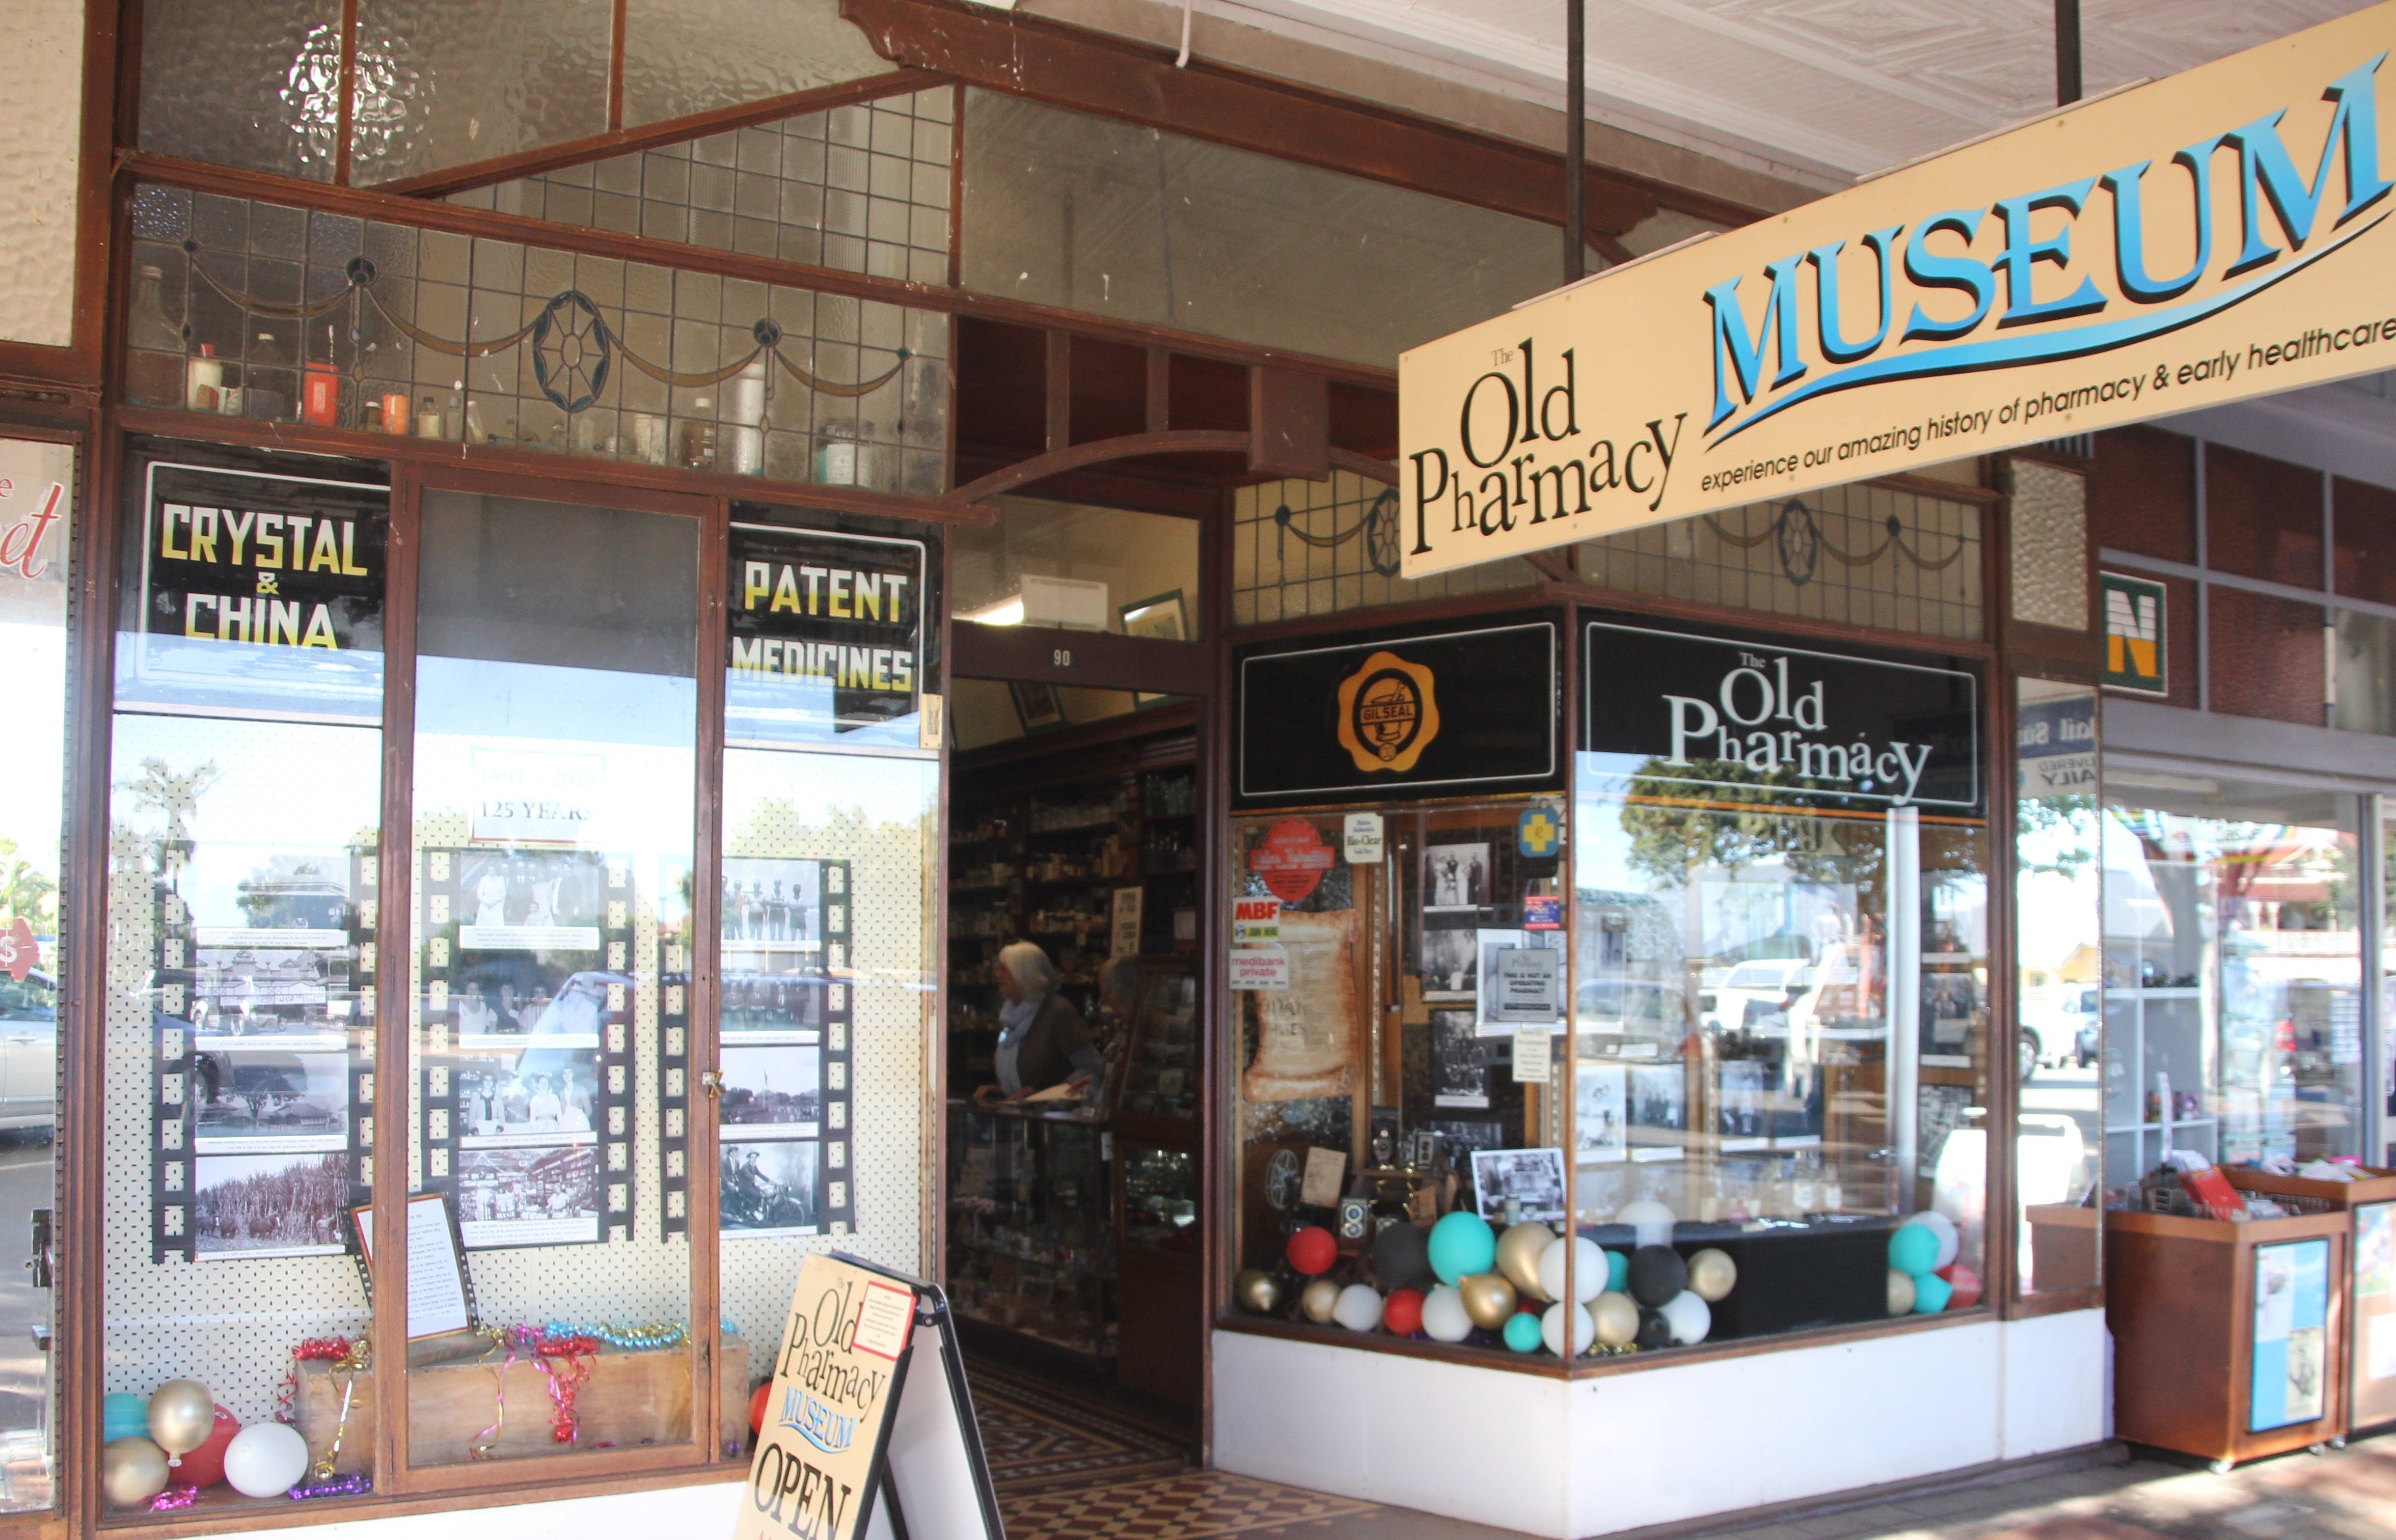 Old Pharmacy Museum  Childers - Accommodation Sunshine Coast